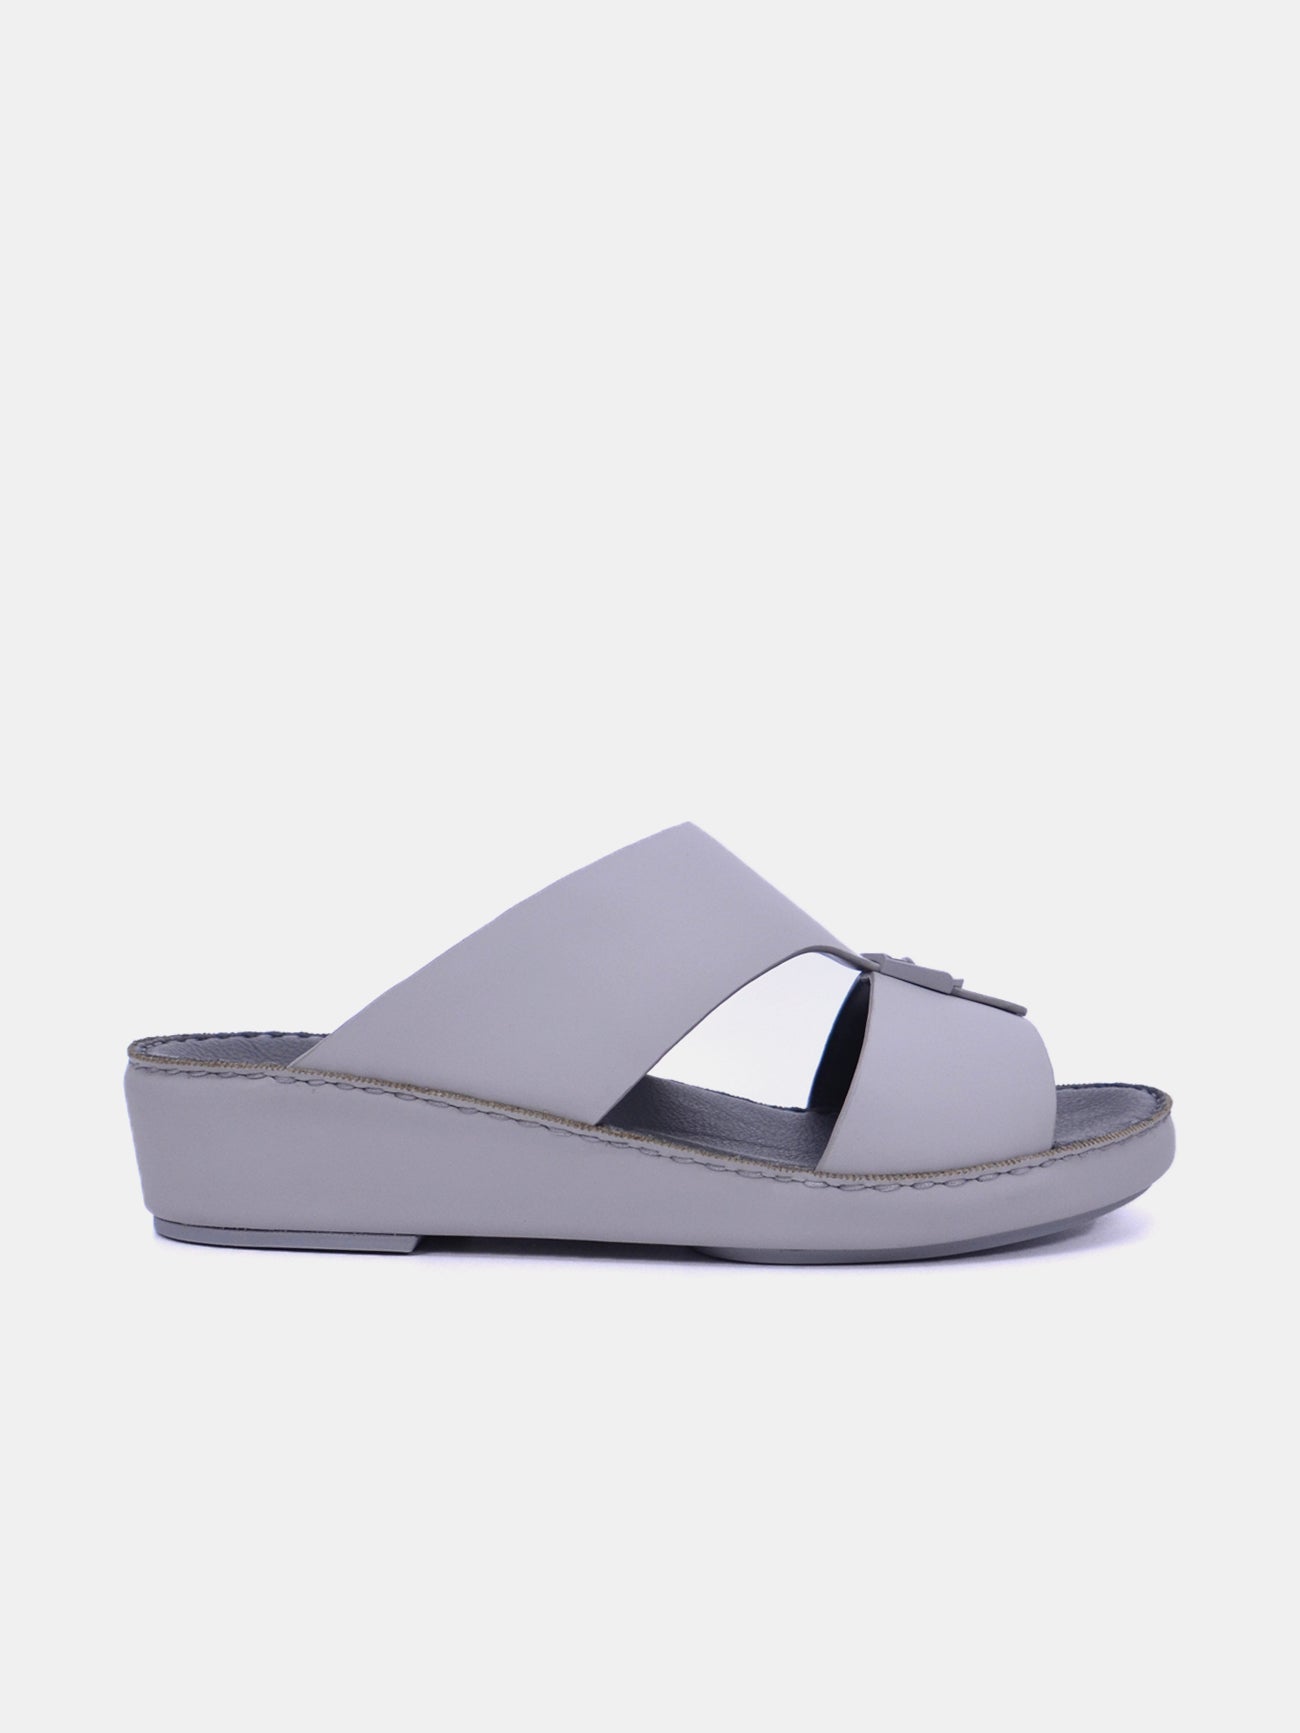 Barjeel Uno Men's Sandals #color_Grey